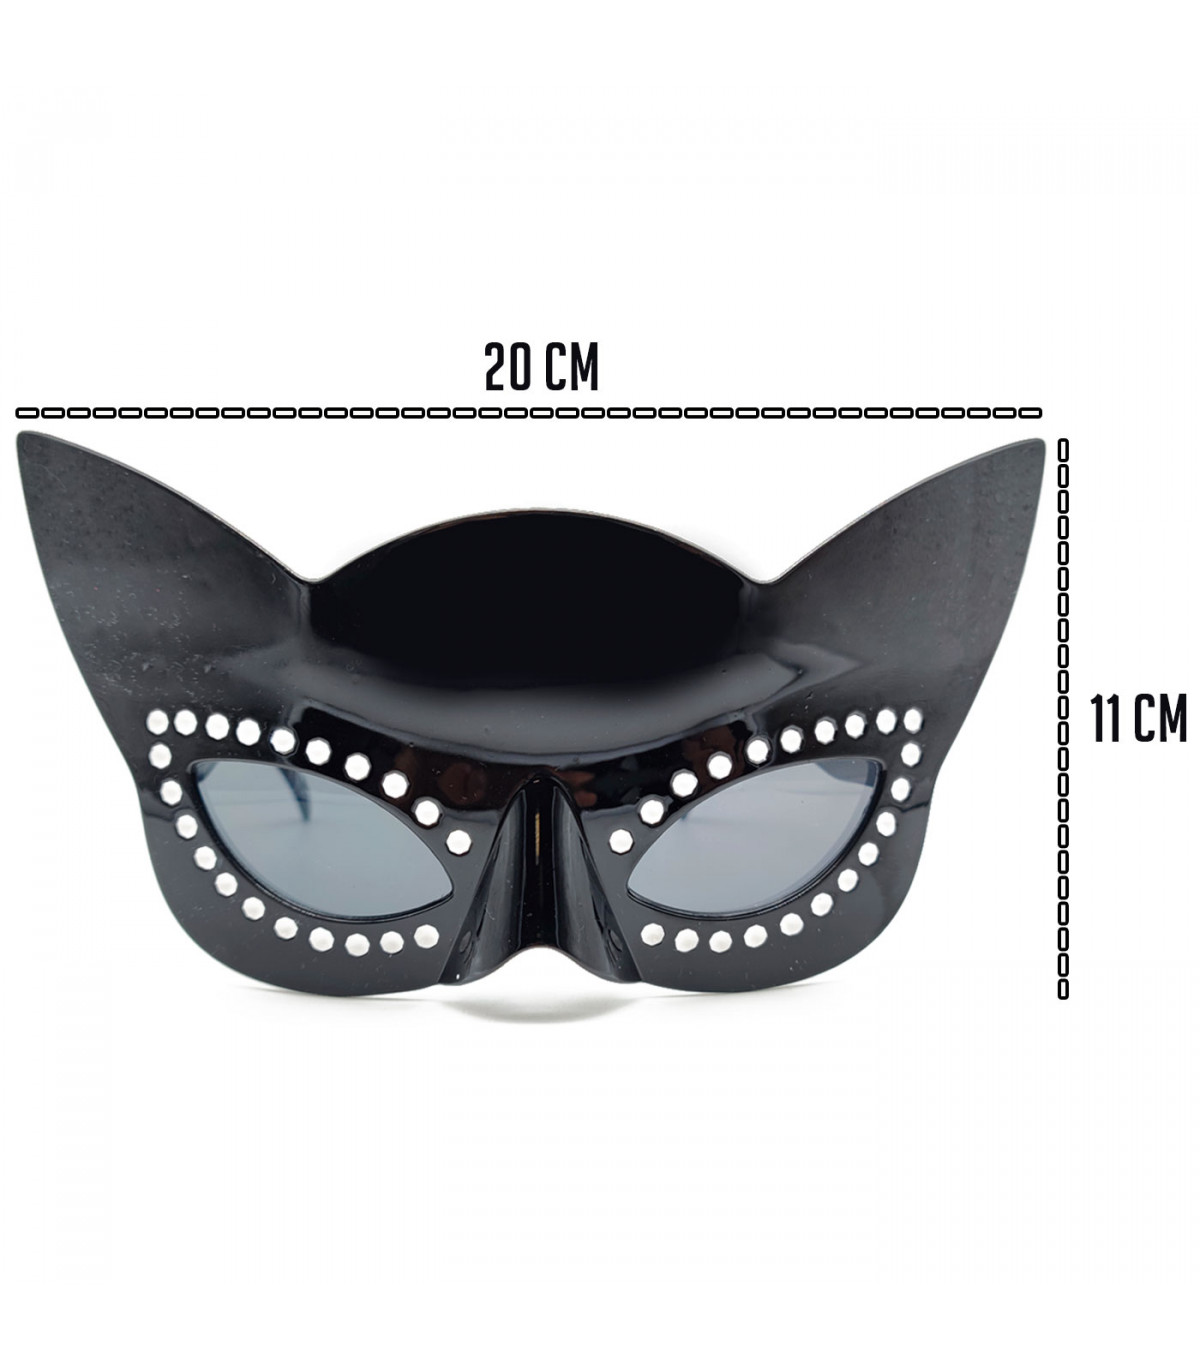 Tradineur - Pack de 4 Gafas de fiesta sin lentes - Fabricado en Plástico -  Ideal para eventos de disfraces como Halloween y Carn